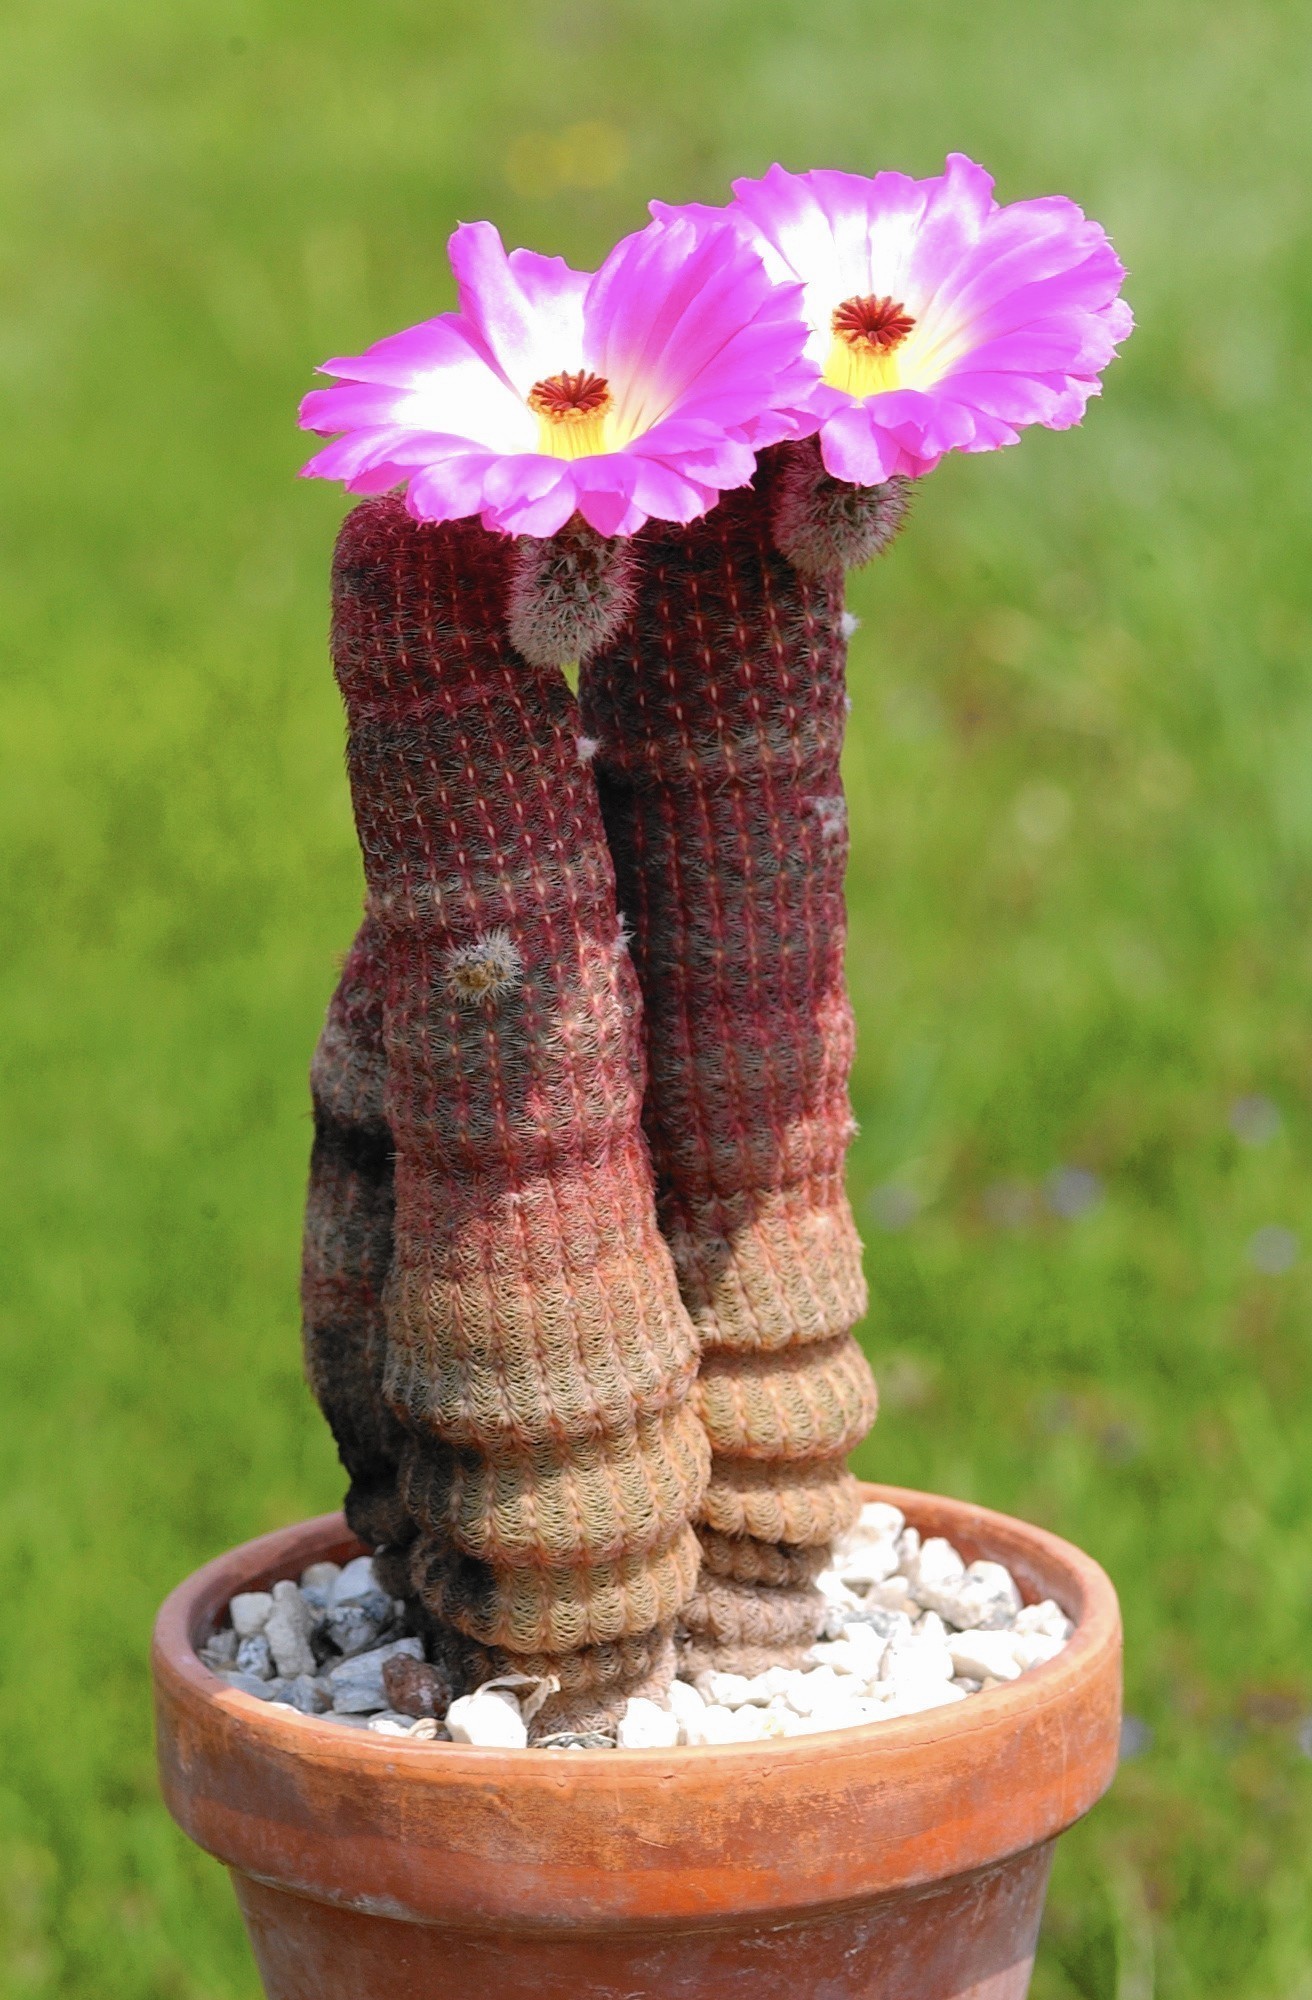 Flowering cactus photo